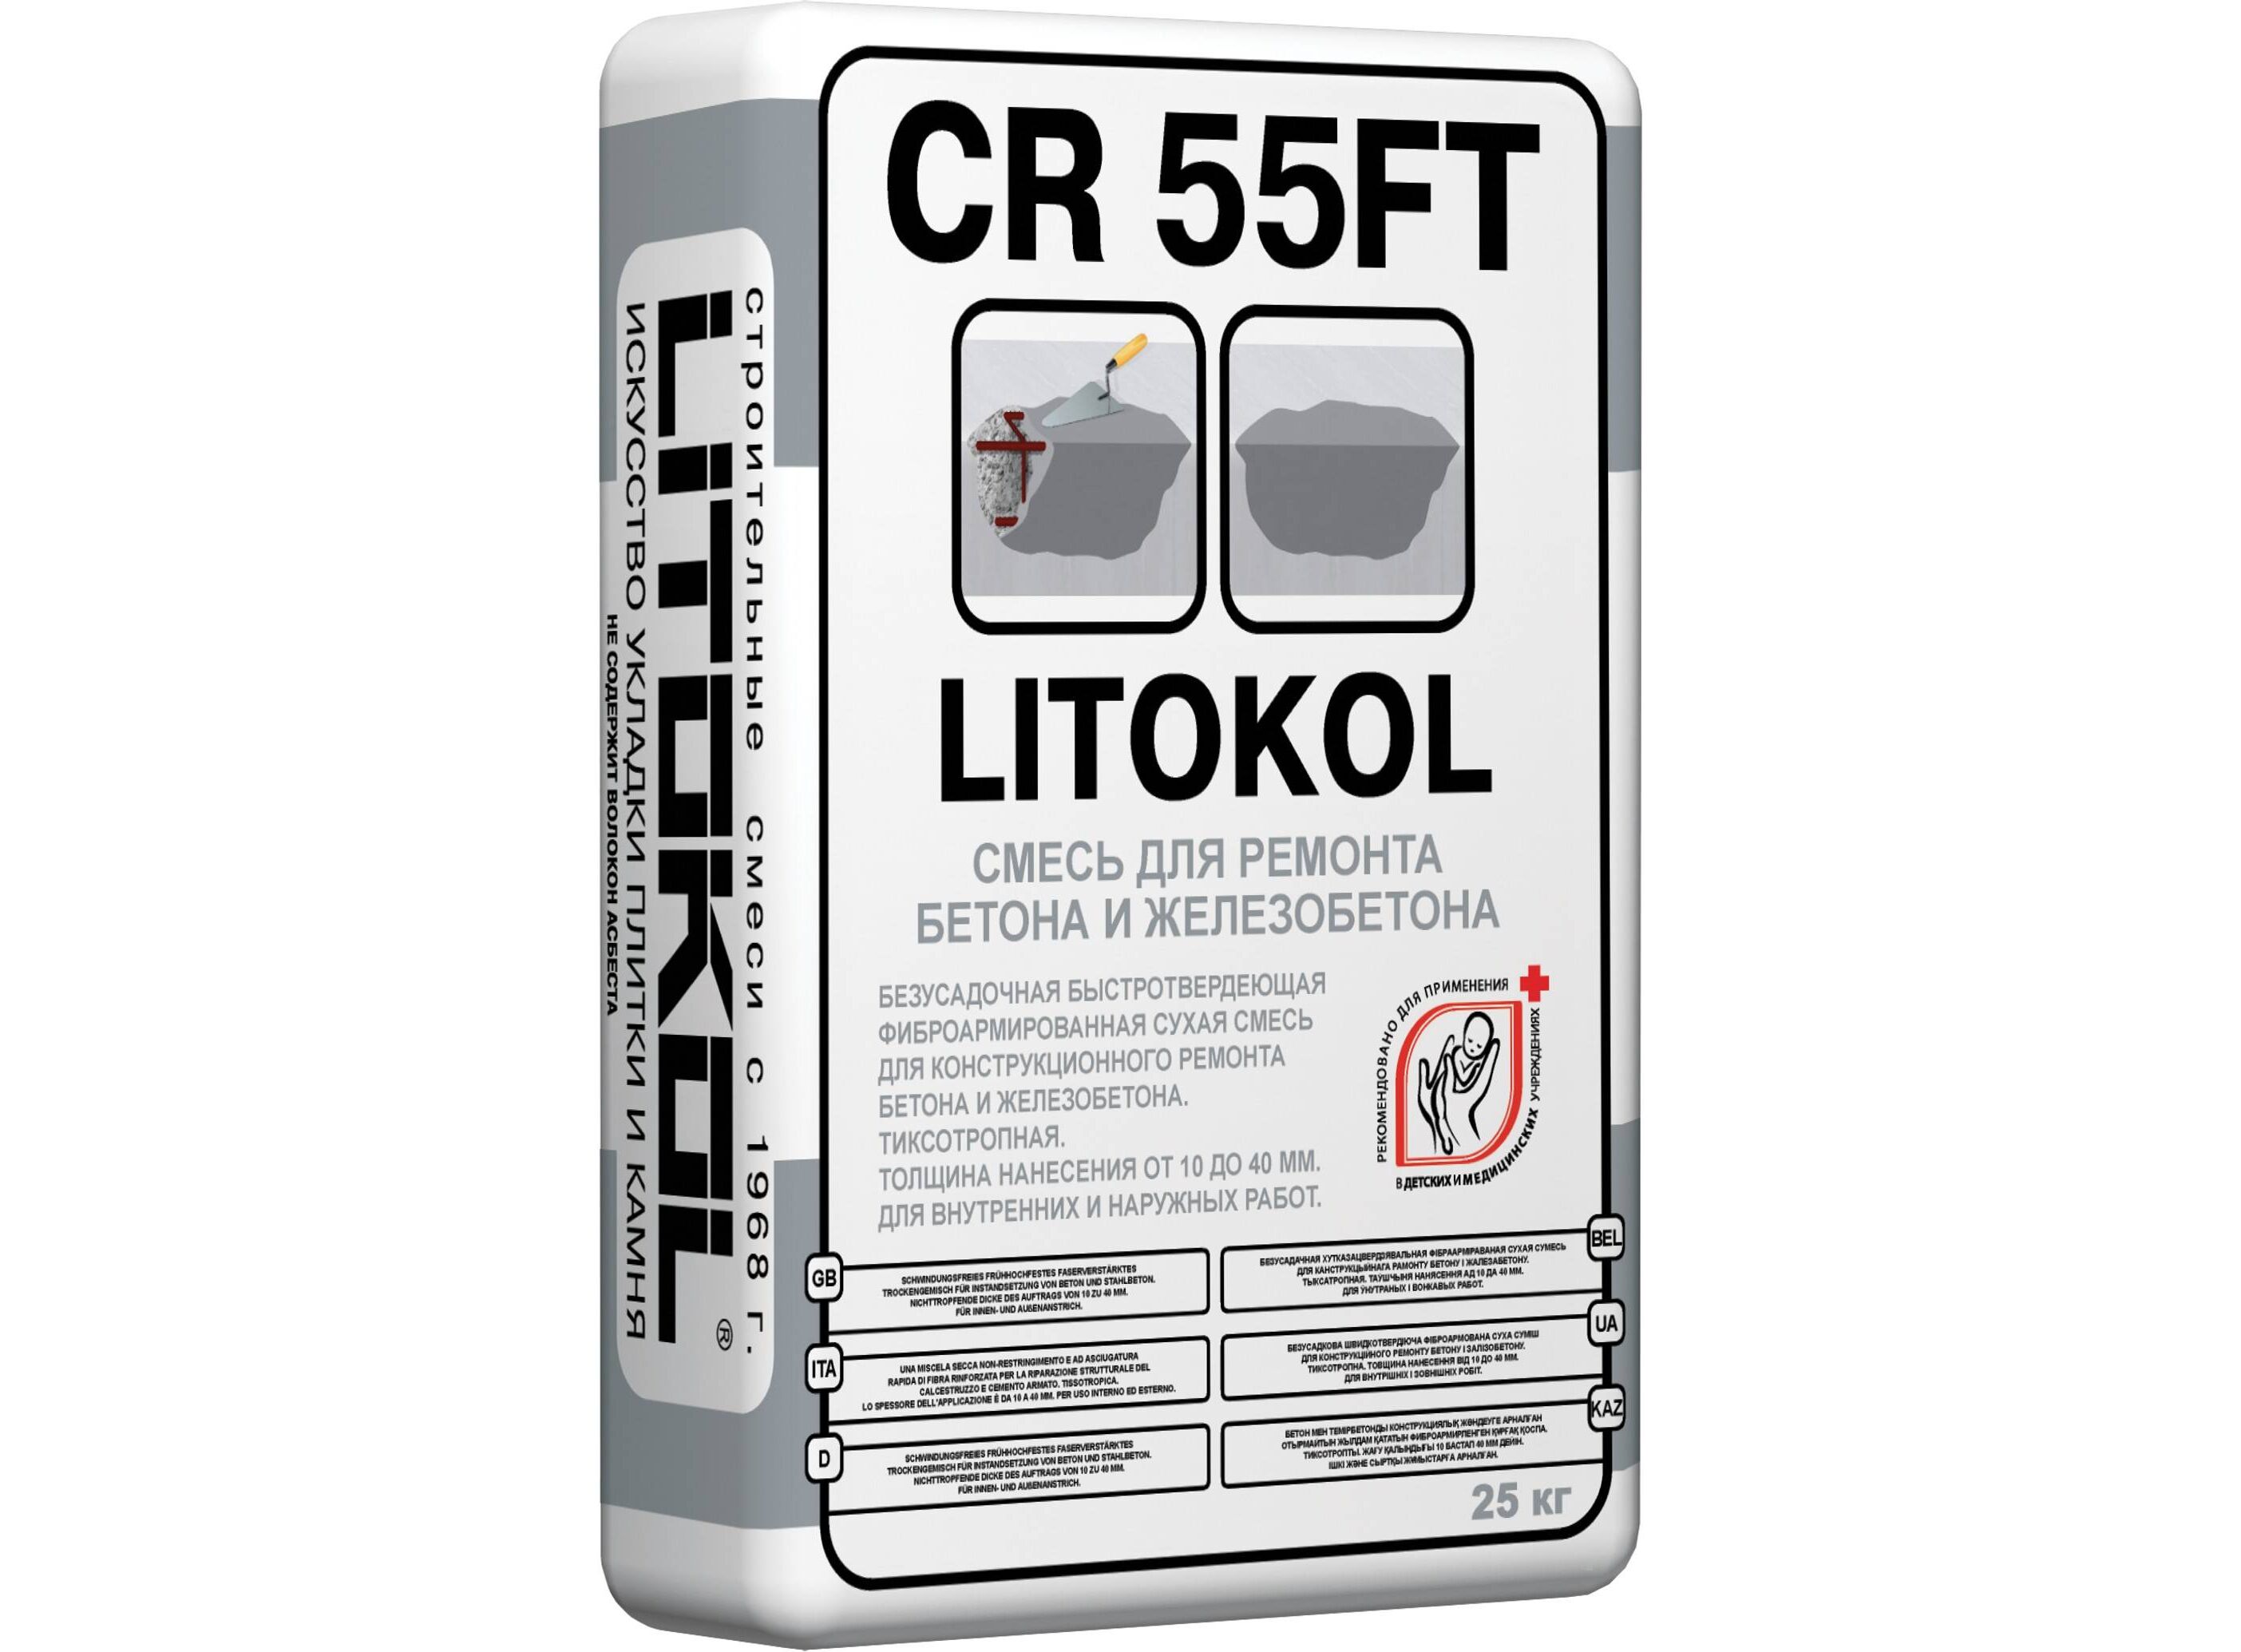 Ремонтный состав 25 кг. 55ft Litokol CR 25кг. Смесь ремонтная 25кг CR 55ft Fine Litokol. Litokol CR 55ft характеристики. Литокол cr55ft смесь для ремонта бетона и железобетона.